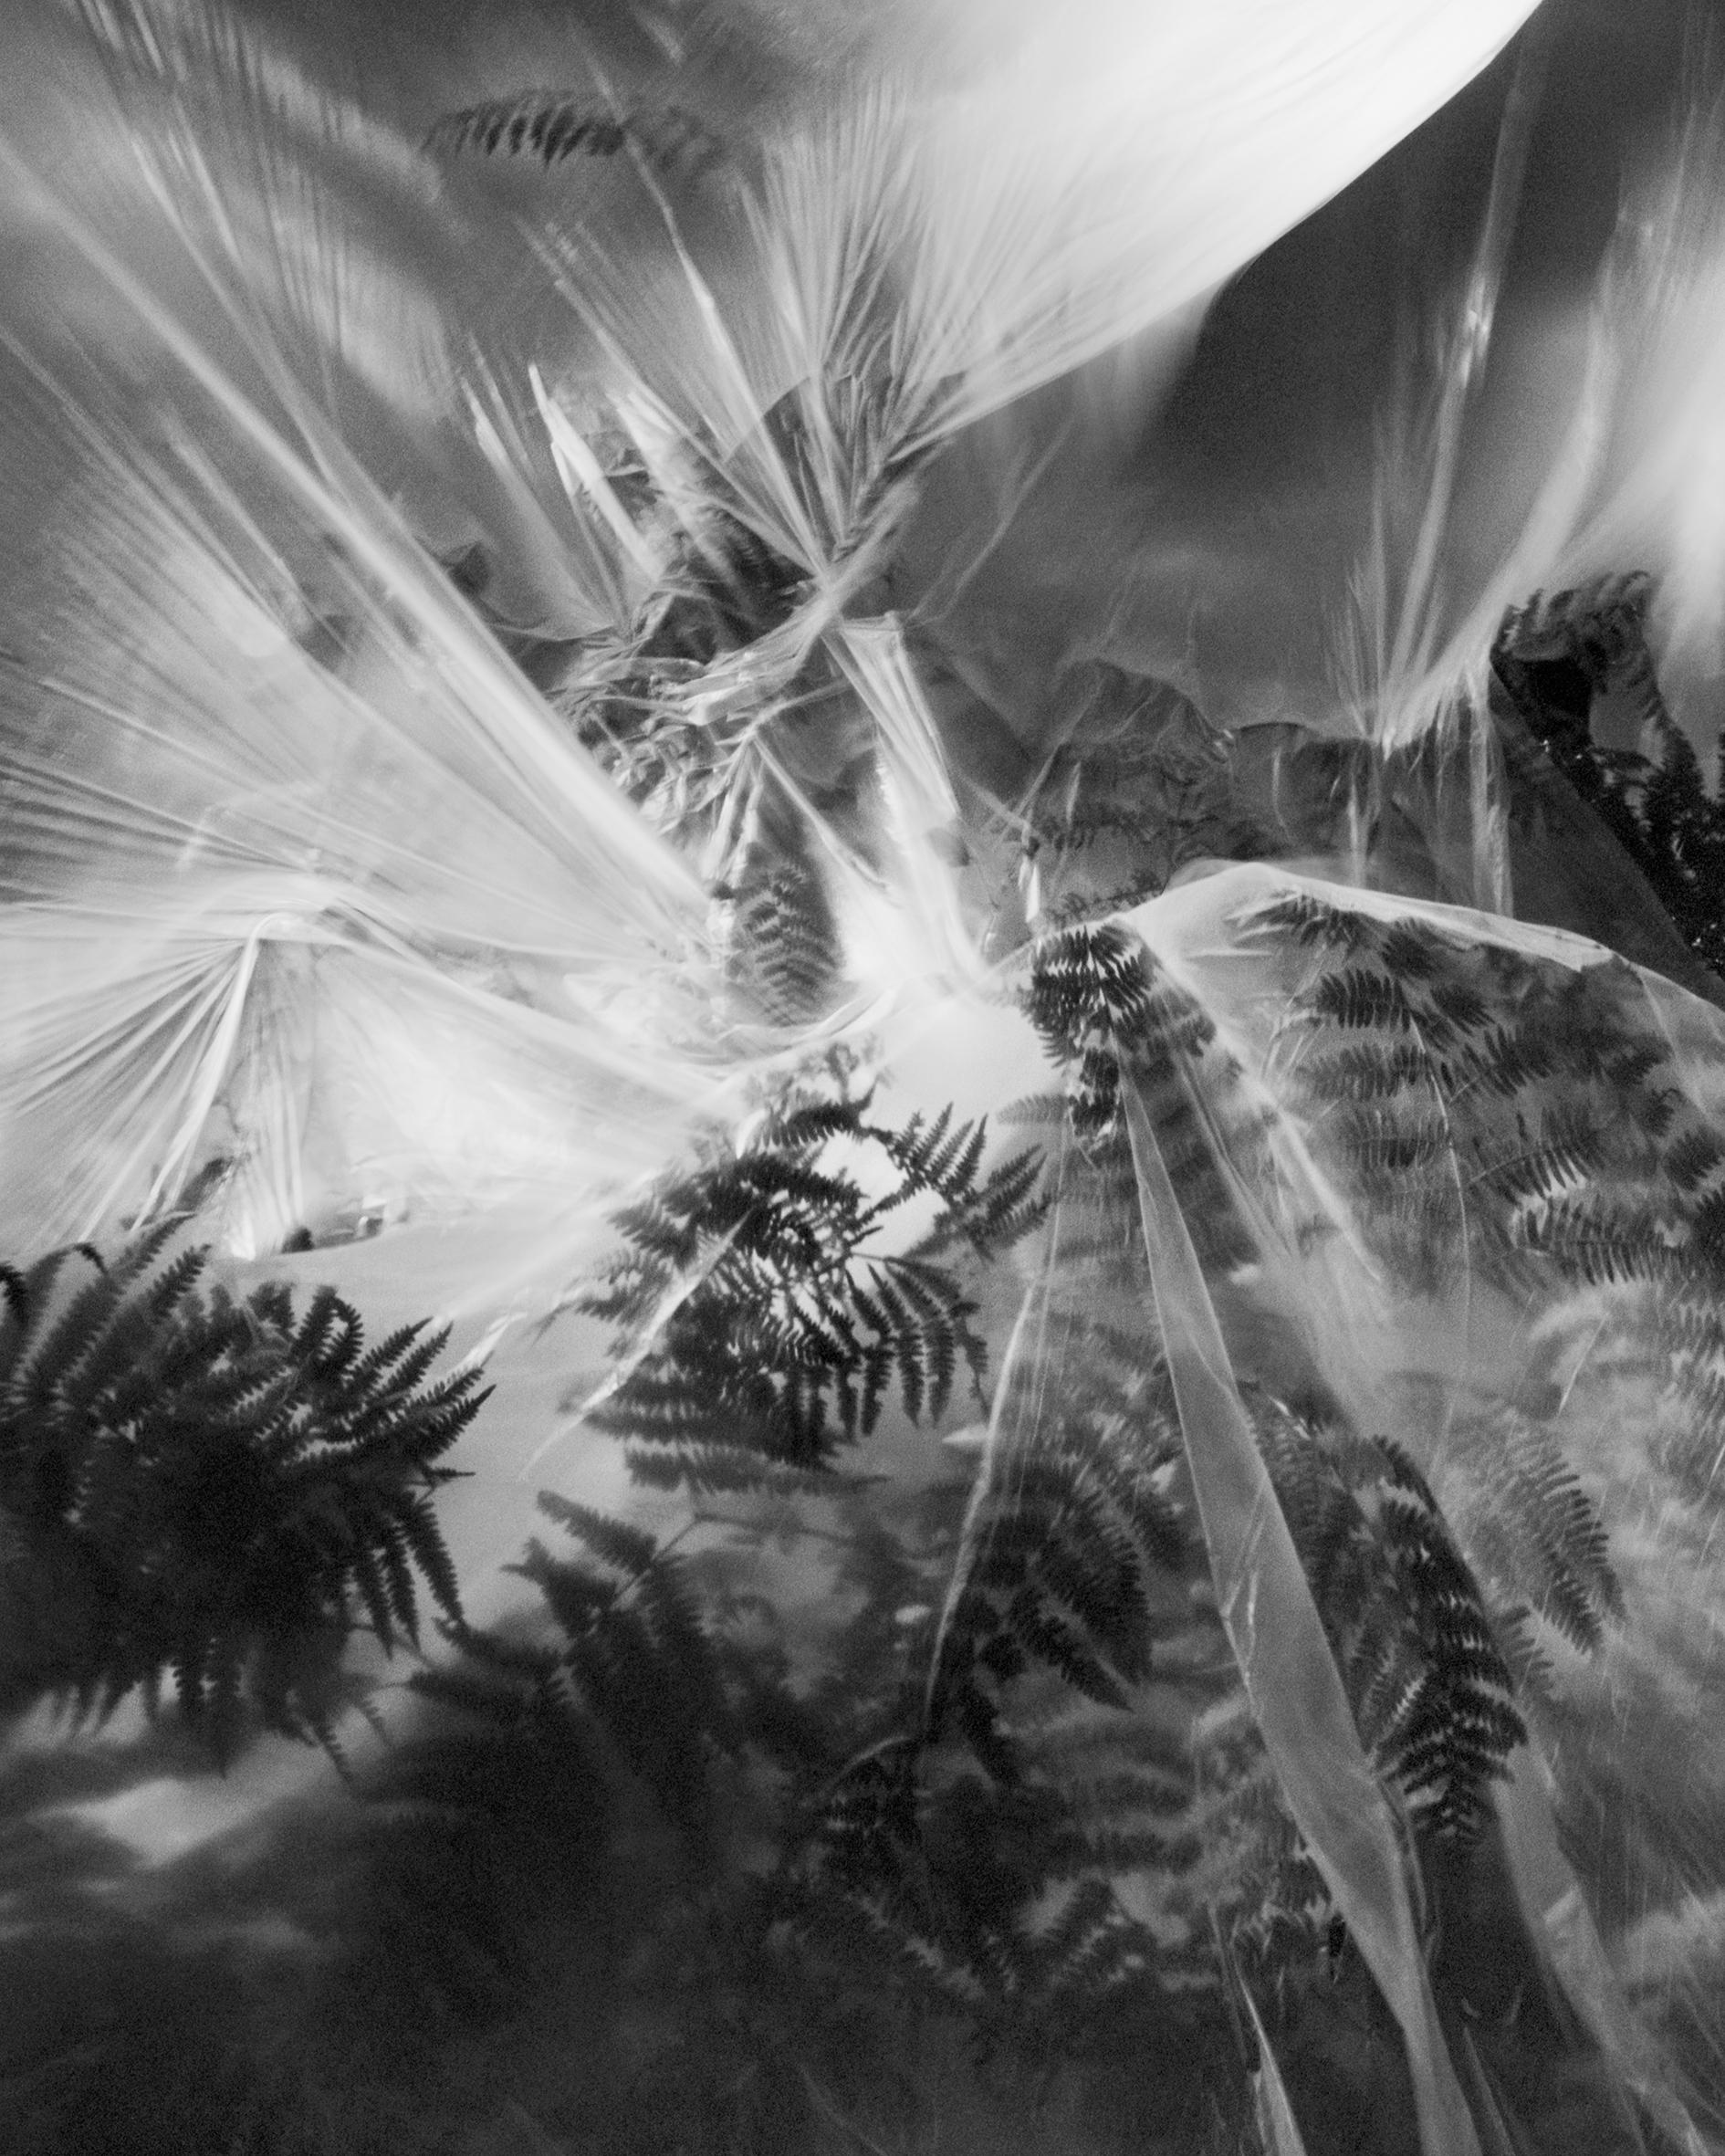 Ugne Pouwell Black and White Photograph – Fern – Schwarz-Weiß-Landschaftsfotografie Limitierte Auflage von 20 Stück